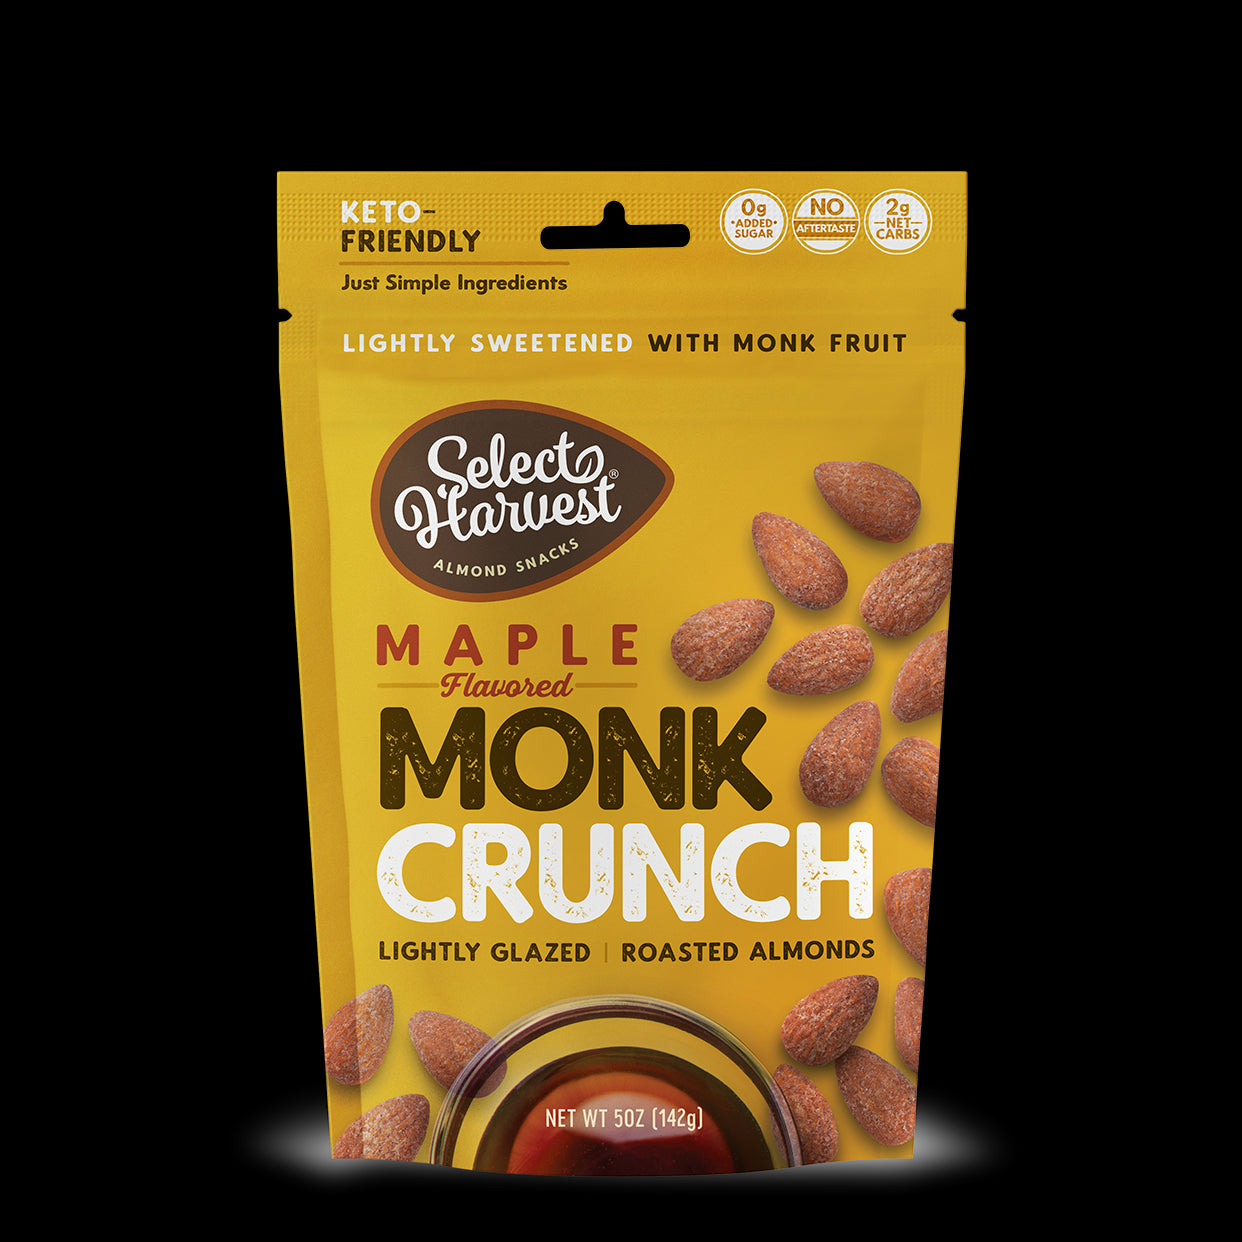 Maple Monk Crunch Almonds - New Formulation!